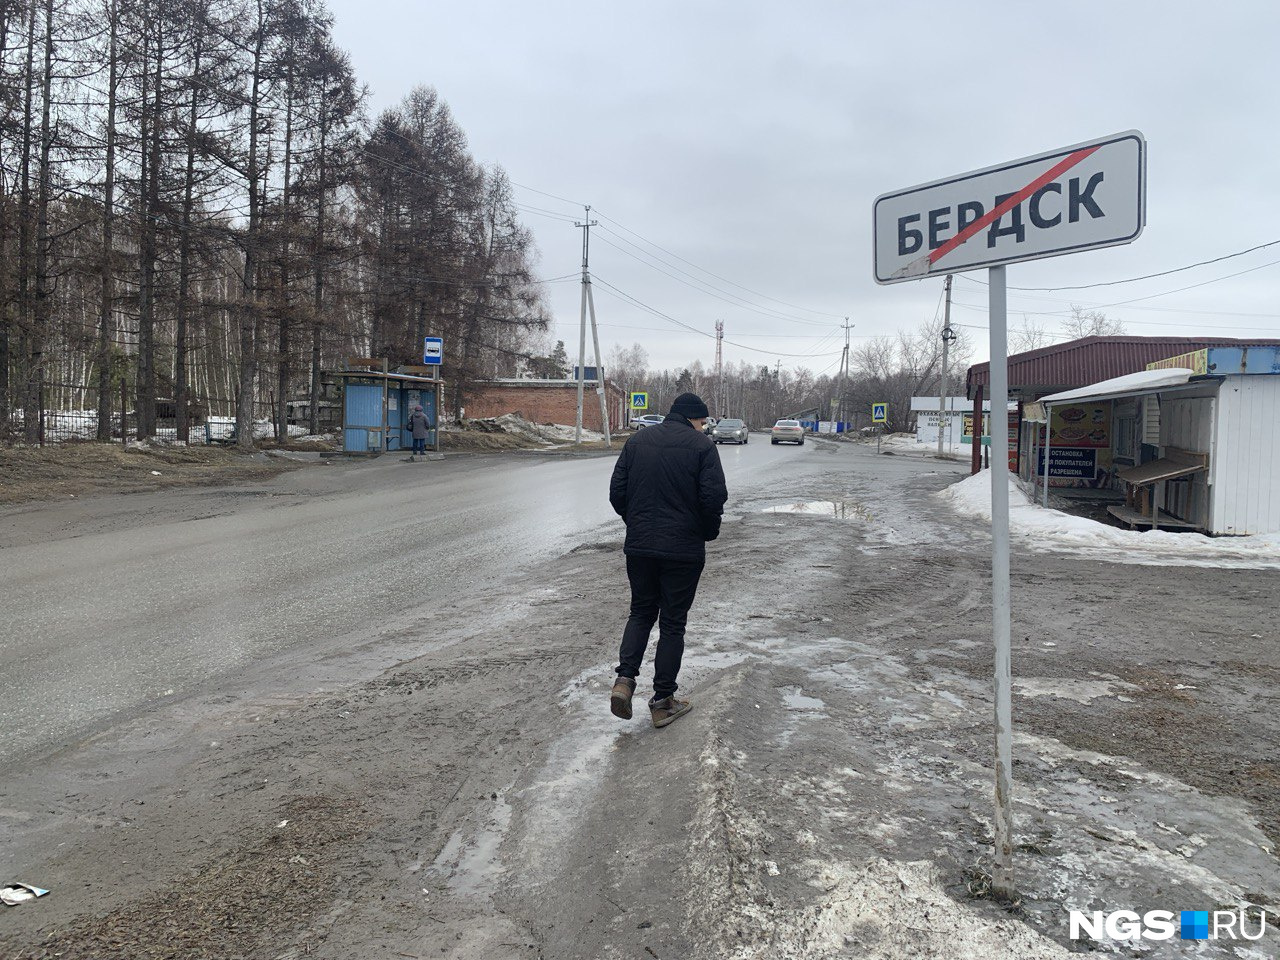 Шадриха уходит в Бердск: поселок под Новосибирском передают из одного населенного пункта в другой — жители запутались